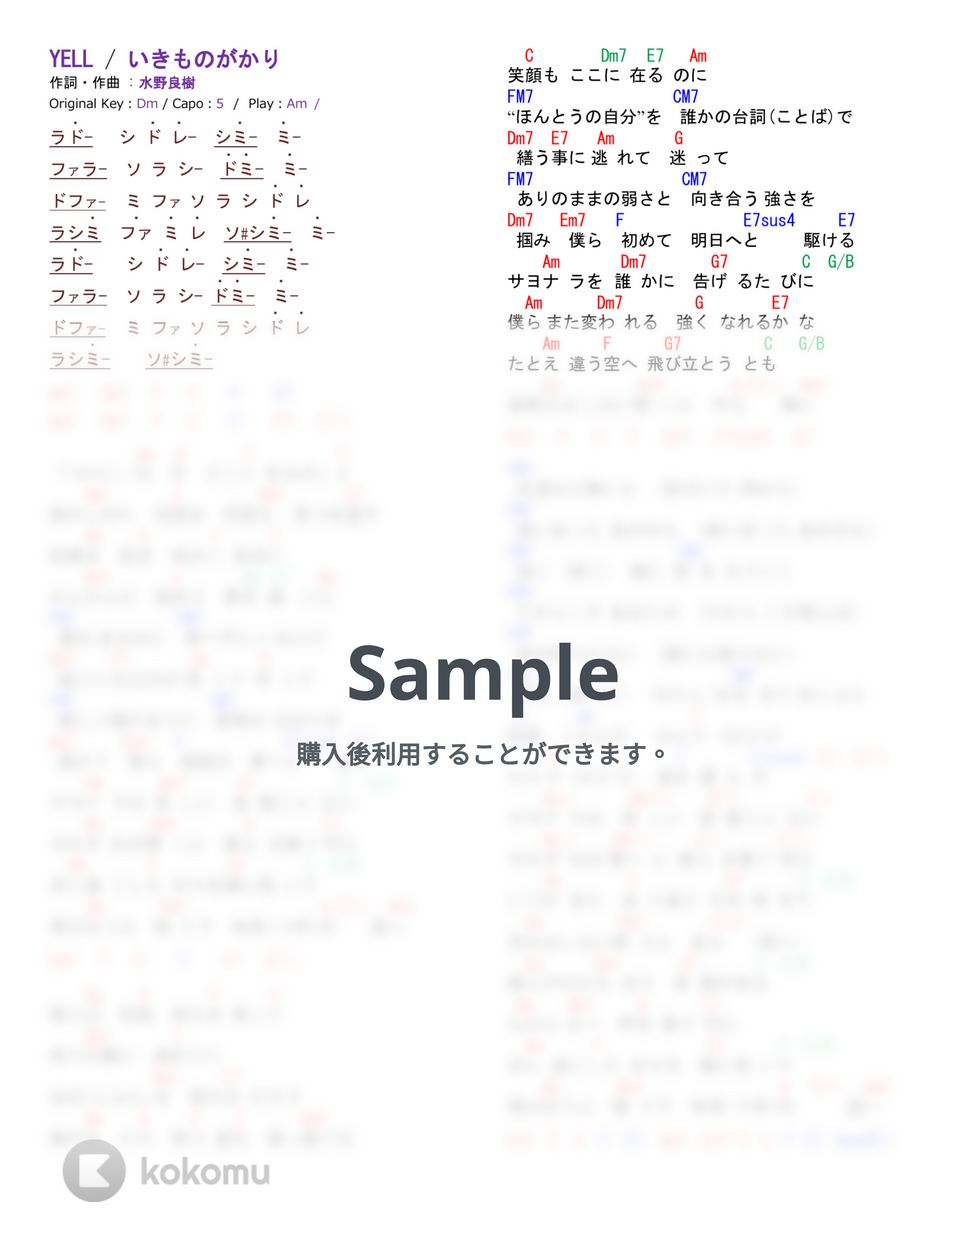 いきものがかり - YELL (ギター簡単アレンジしたコード譜) by kasa22